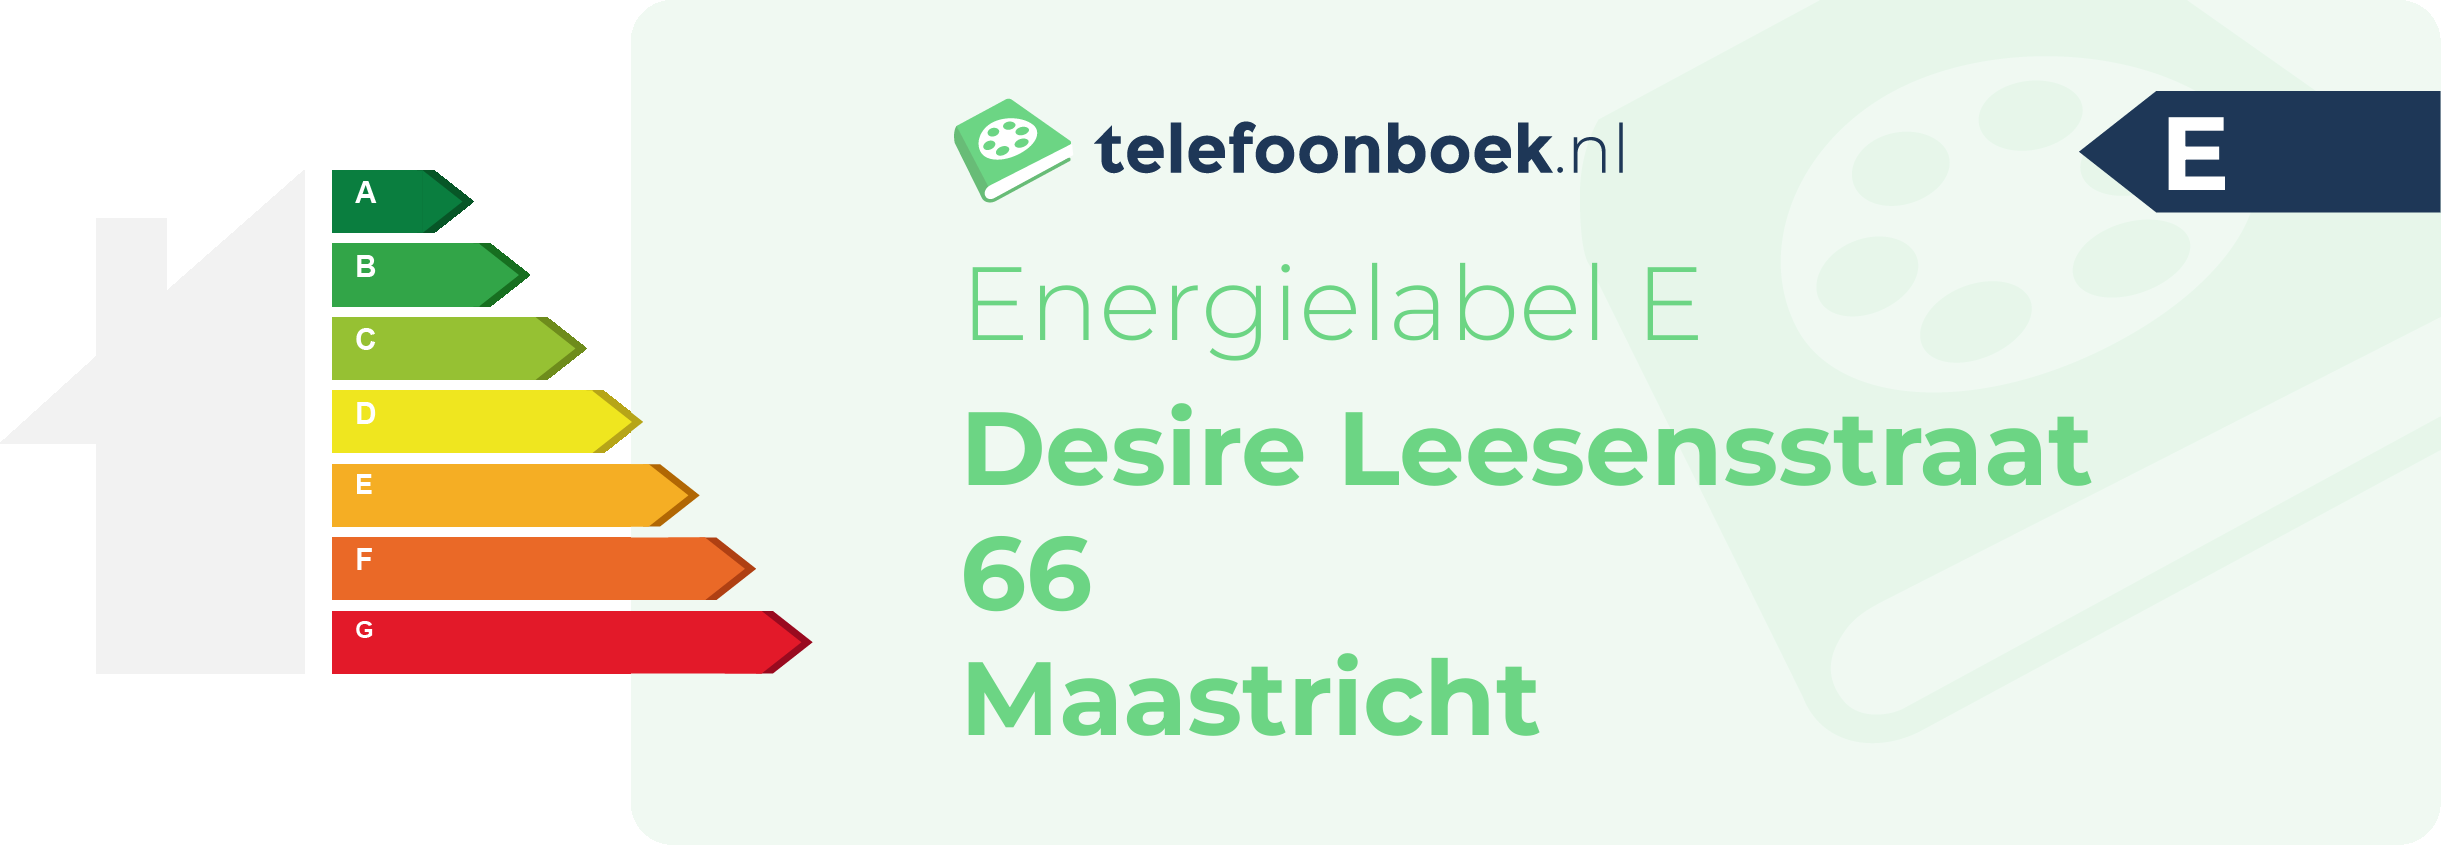 Energielabel Desire Leesensstraat 66 Maastricht